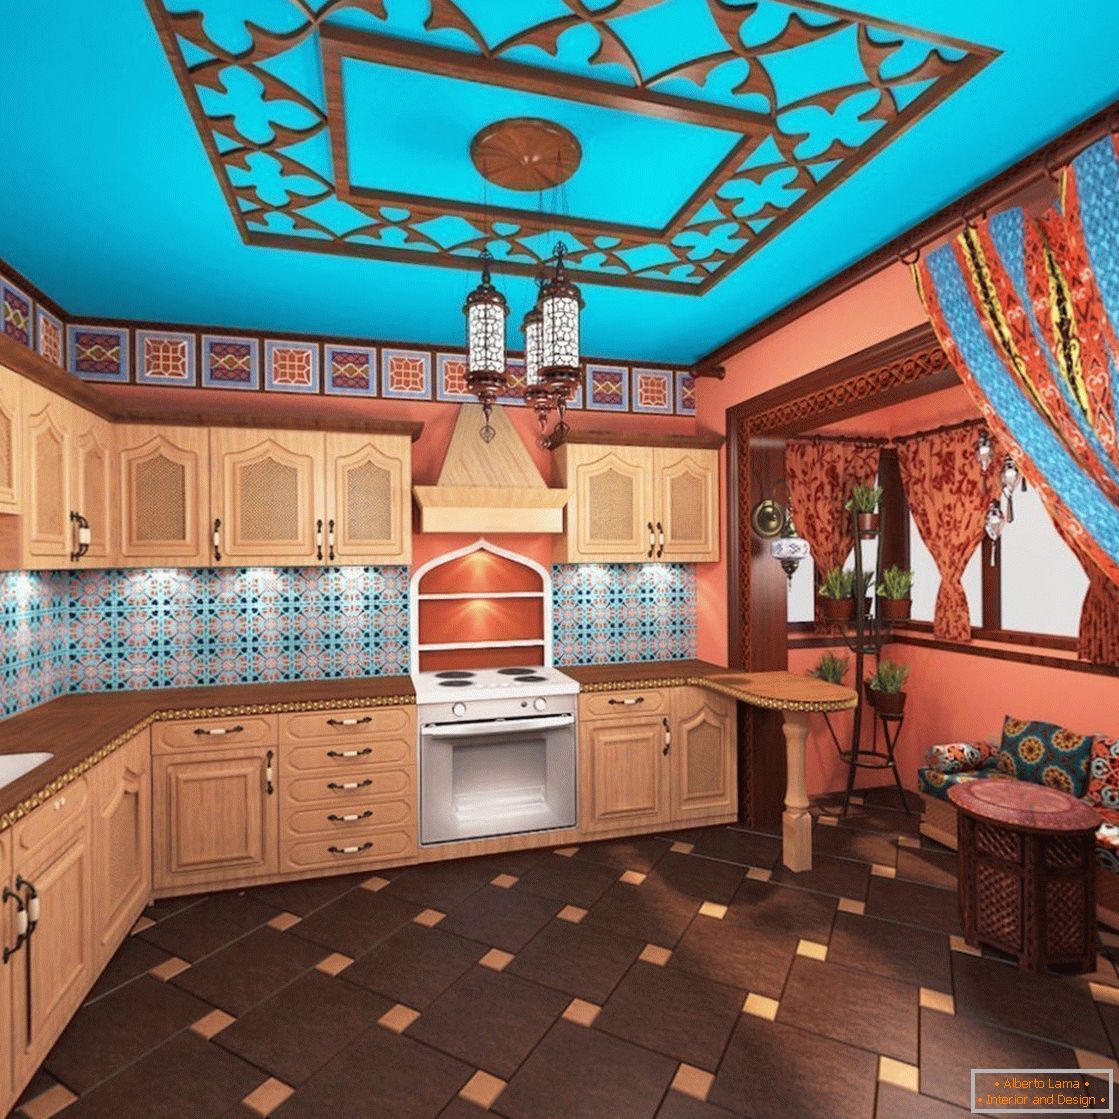 Bucătărie cu un stil marocan luminos